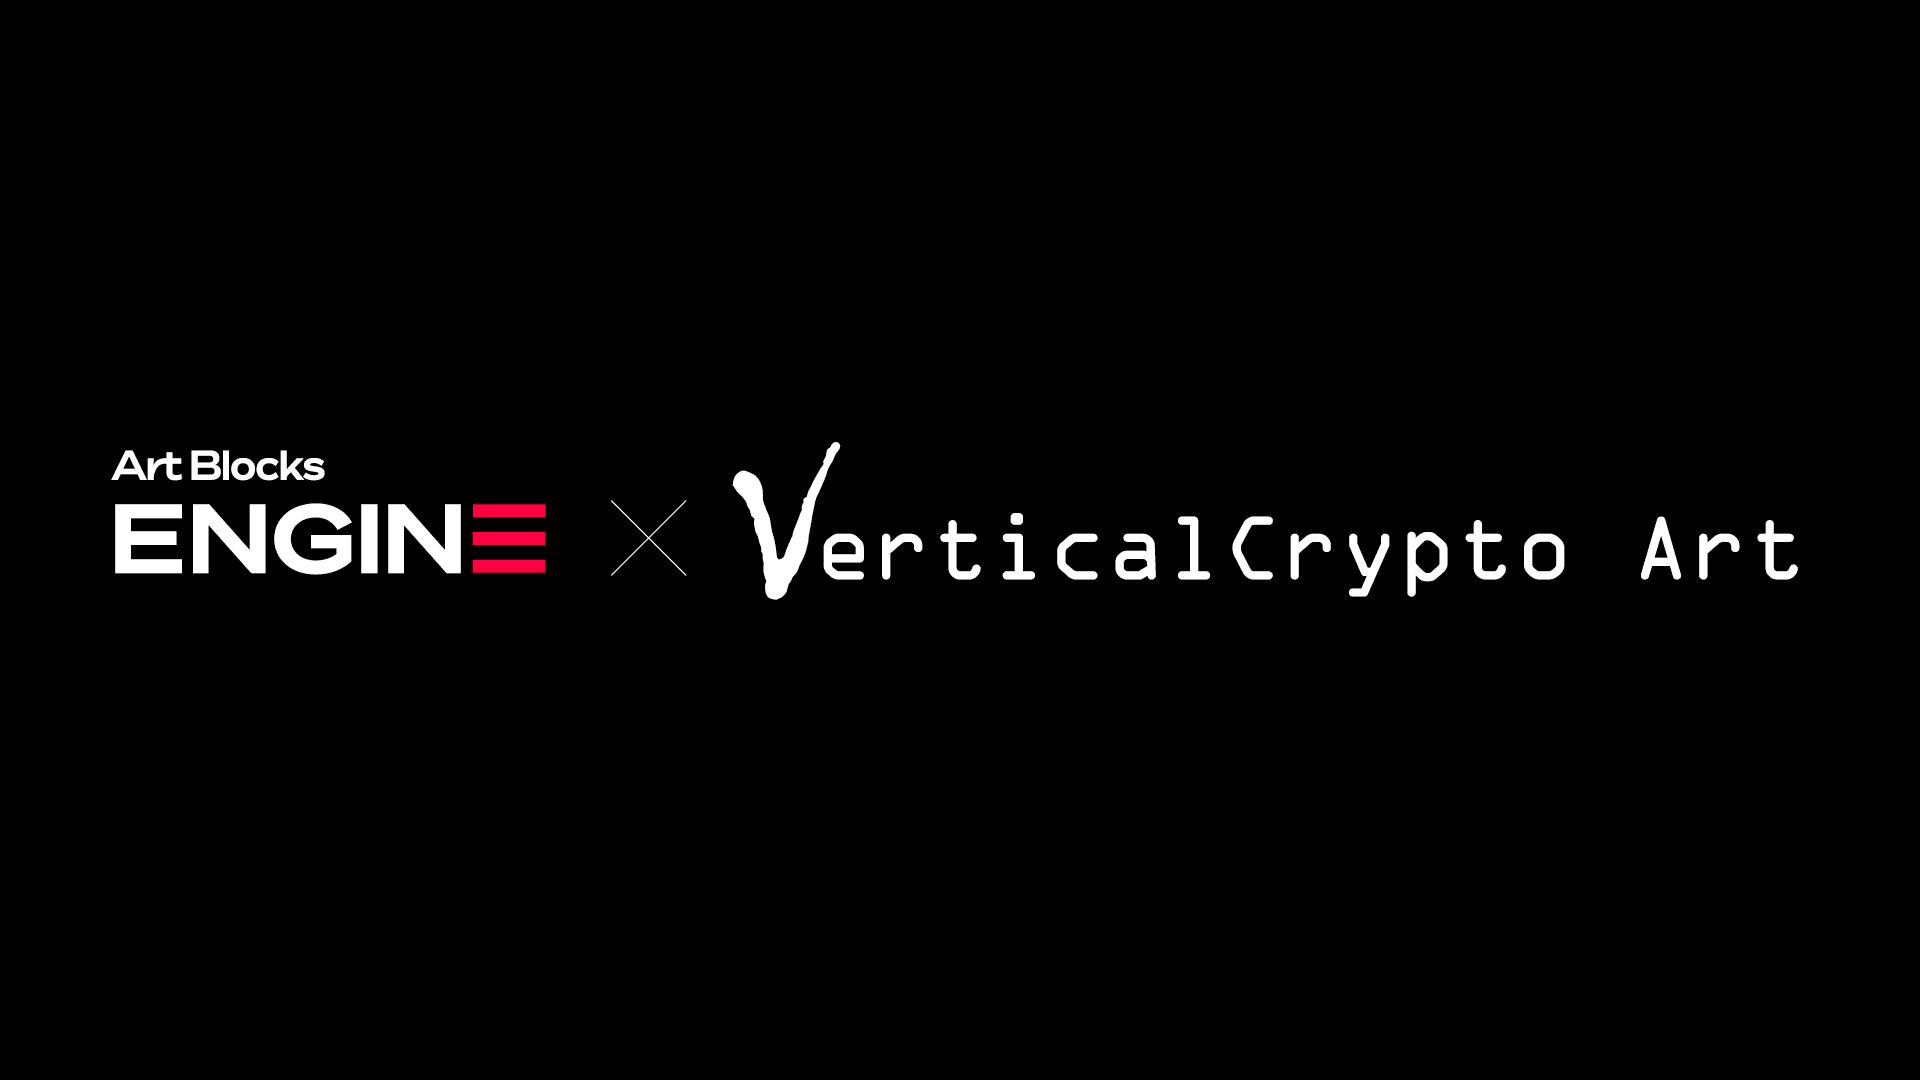 VerticalCrypto Gen Art